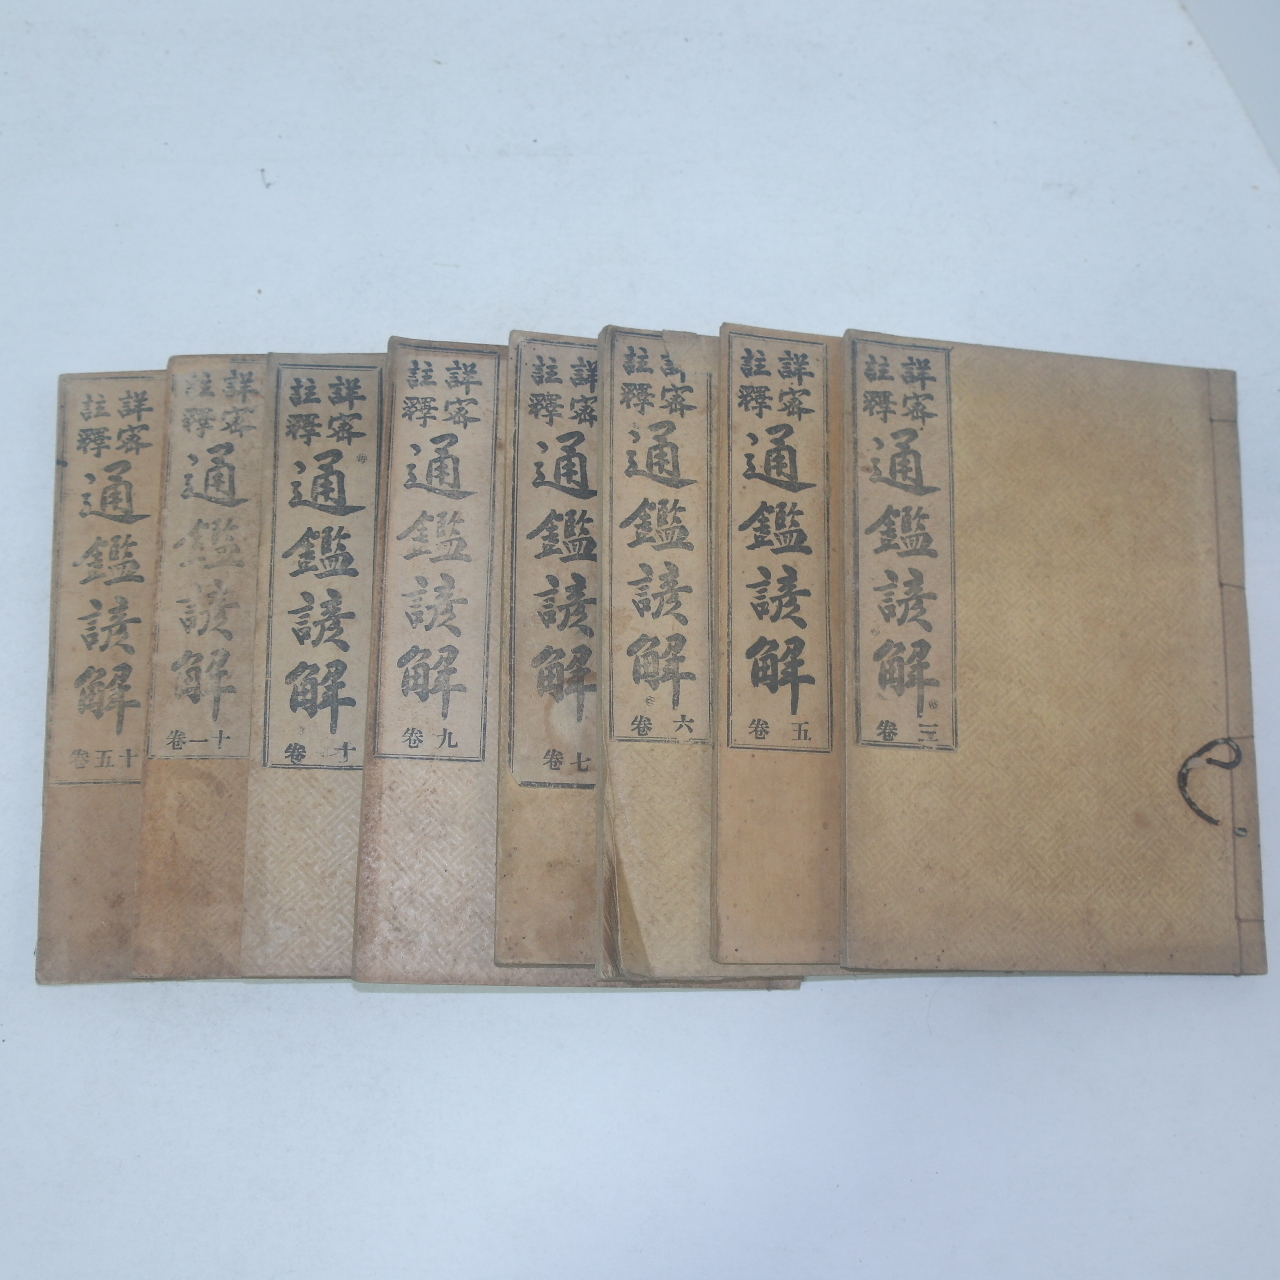 1919년(대정8년) 상밀주석 통감언해(通鑑諺解) 8책